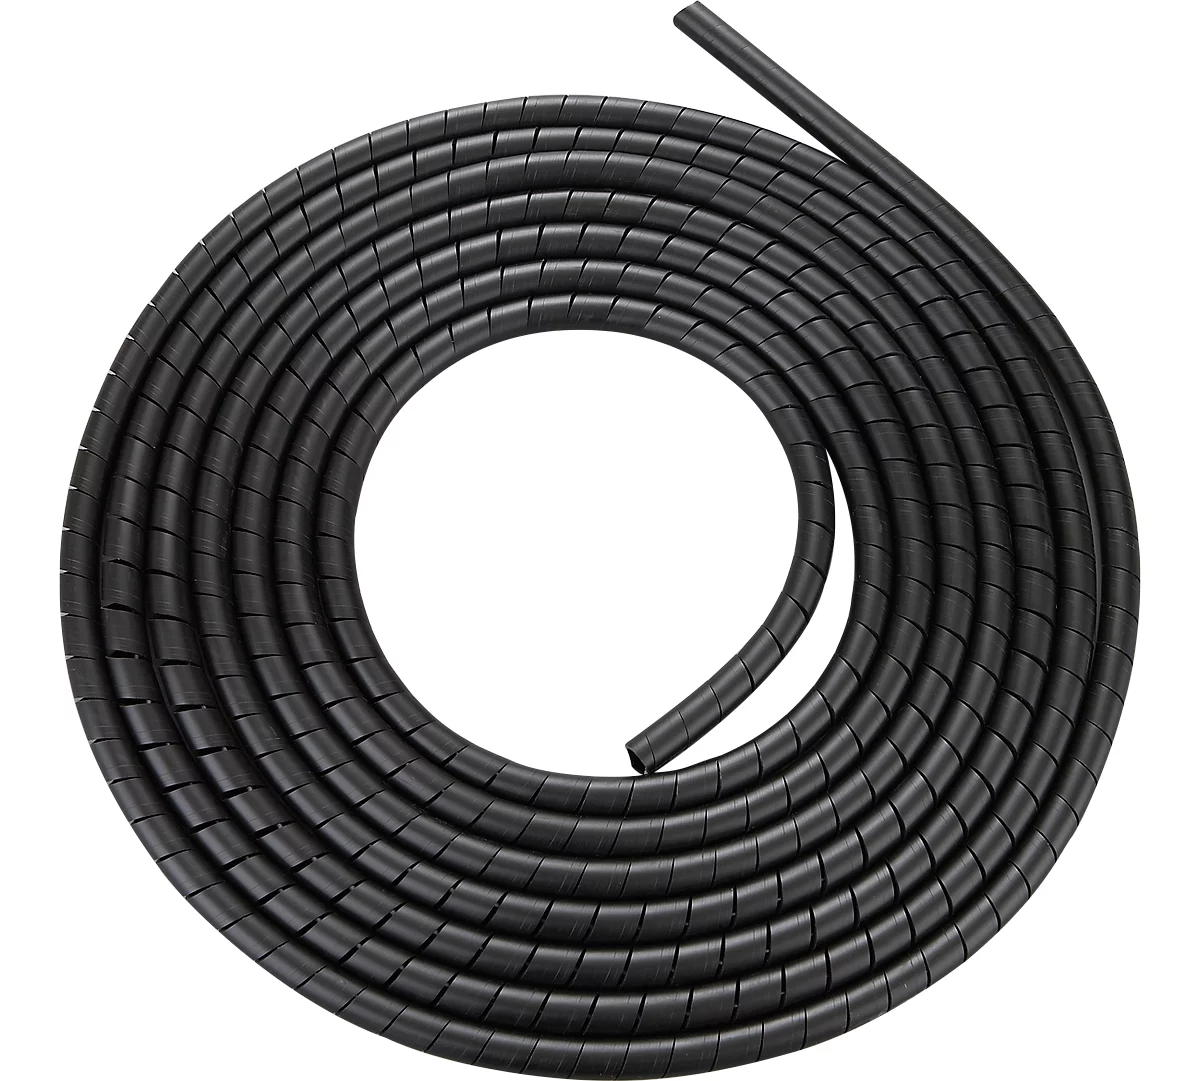 Kabel-Spiralschlauch, schwarz